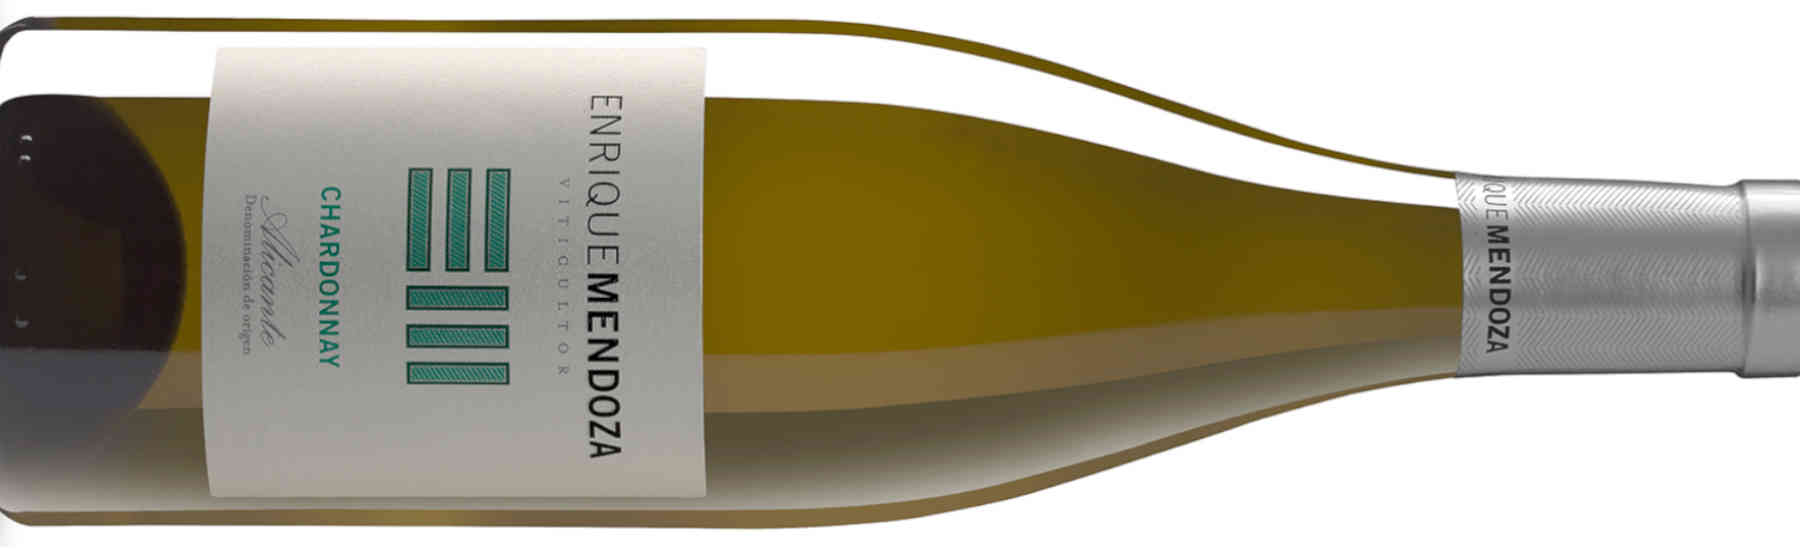 Enrique Mendoza Chardonnay